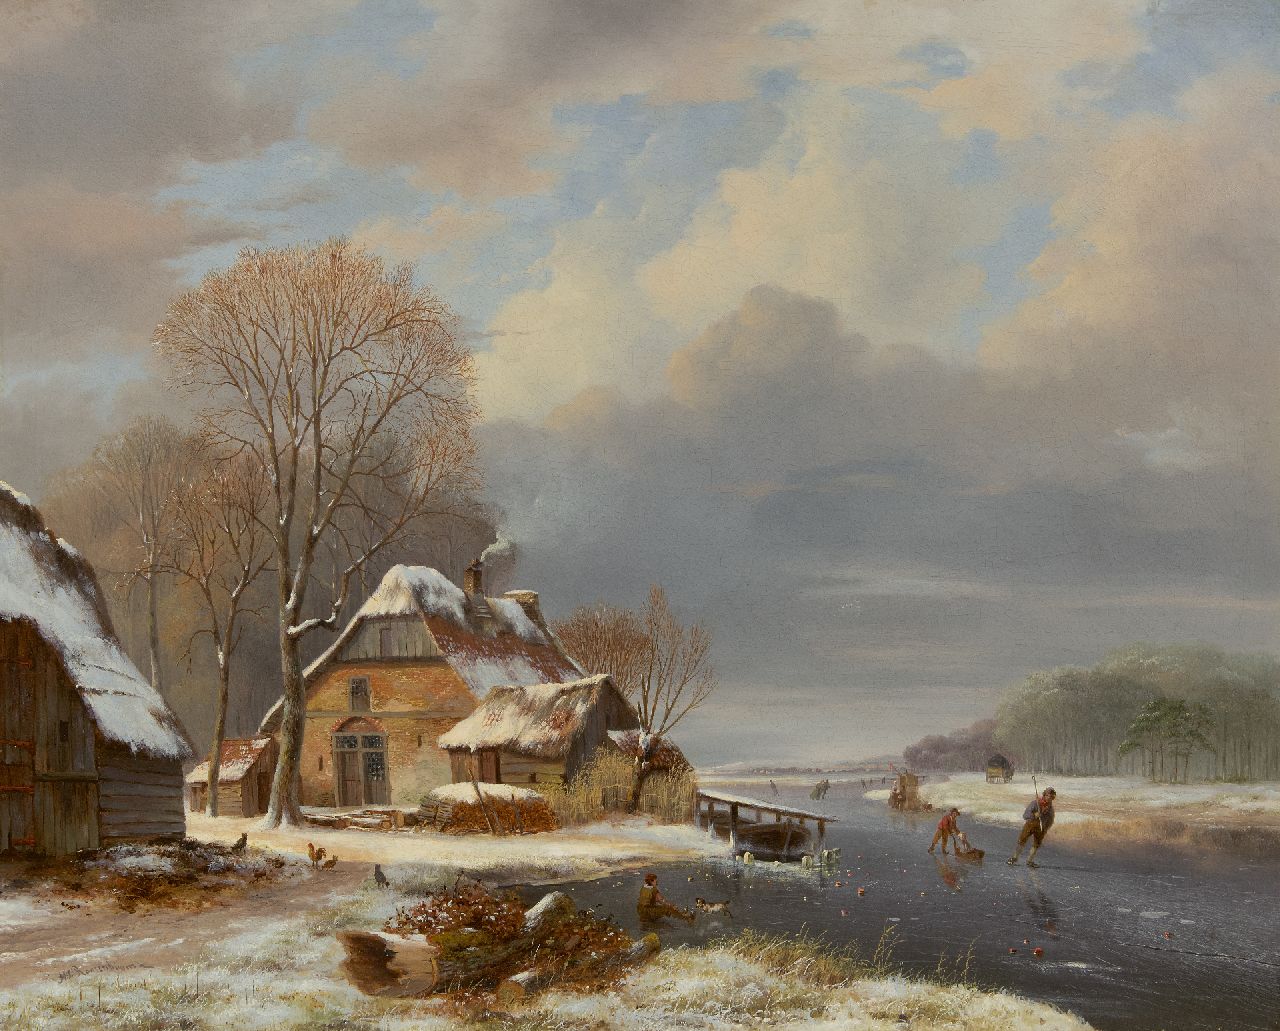 Roosenboom N.J.  | Nicolaas Johannes Roosenboom | Schilderijen te koop aangeboden | Winters riviergezicht met schaatsers bij een boerderij, olieverf op doek 71,2 x 87,7 cm, gesigneerd linksonder